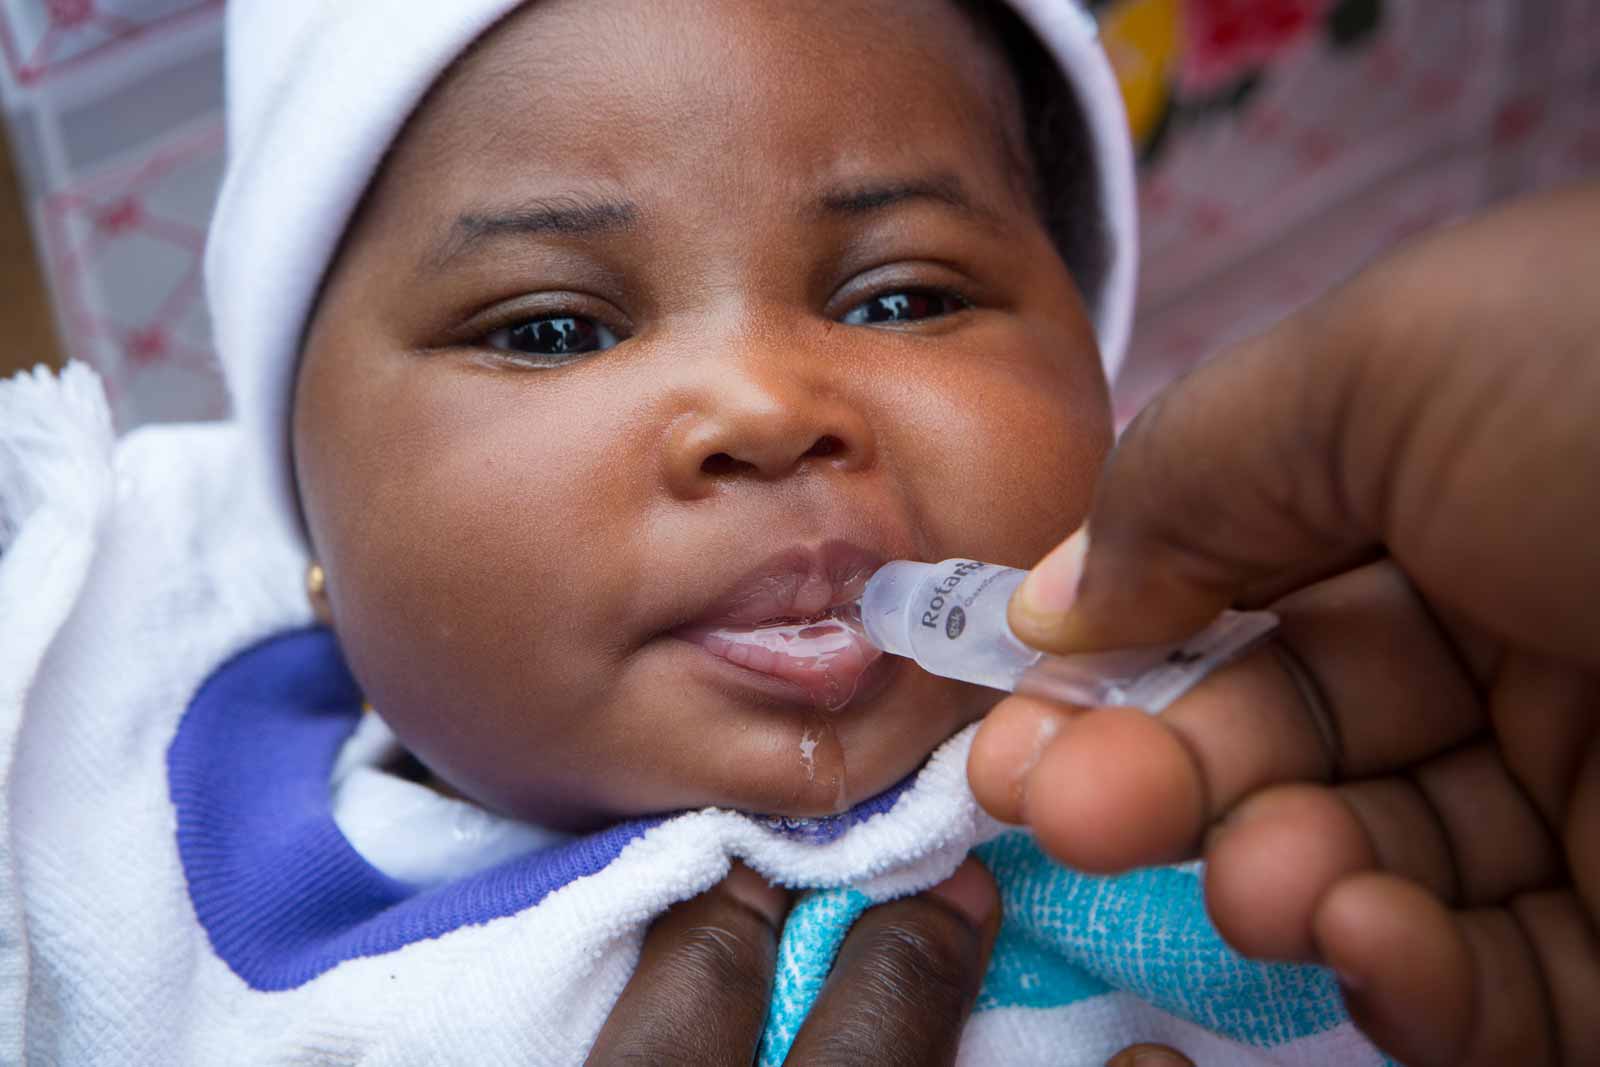   Un bébé reçoit le vaccin antirotavirus. La double introduction des vaccins antipneucoccique et antirotavirus a été considérée comme un test pour le Ghana. Elles ont toutefois eu lieu sans trop de heurts.